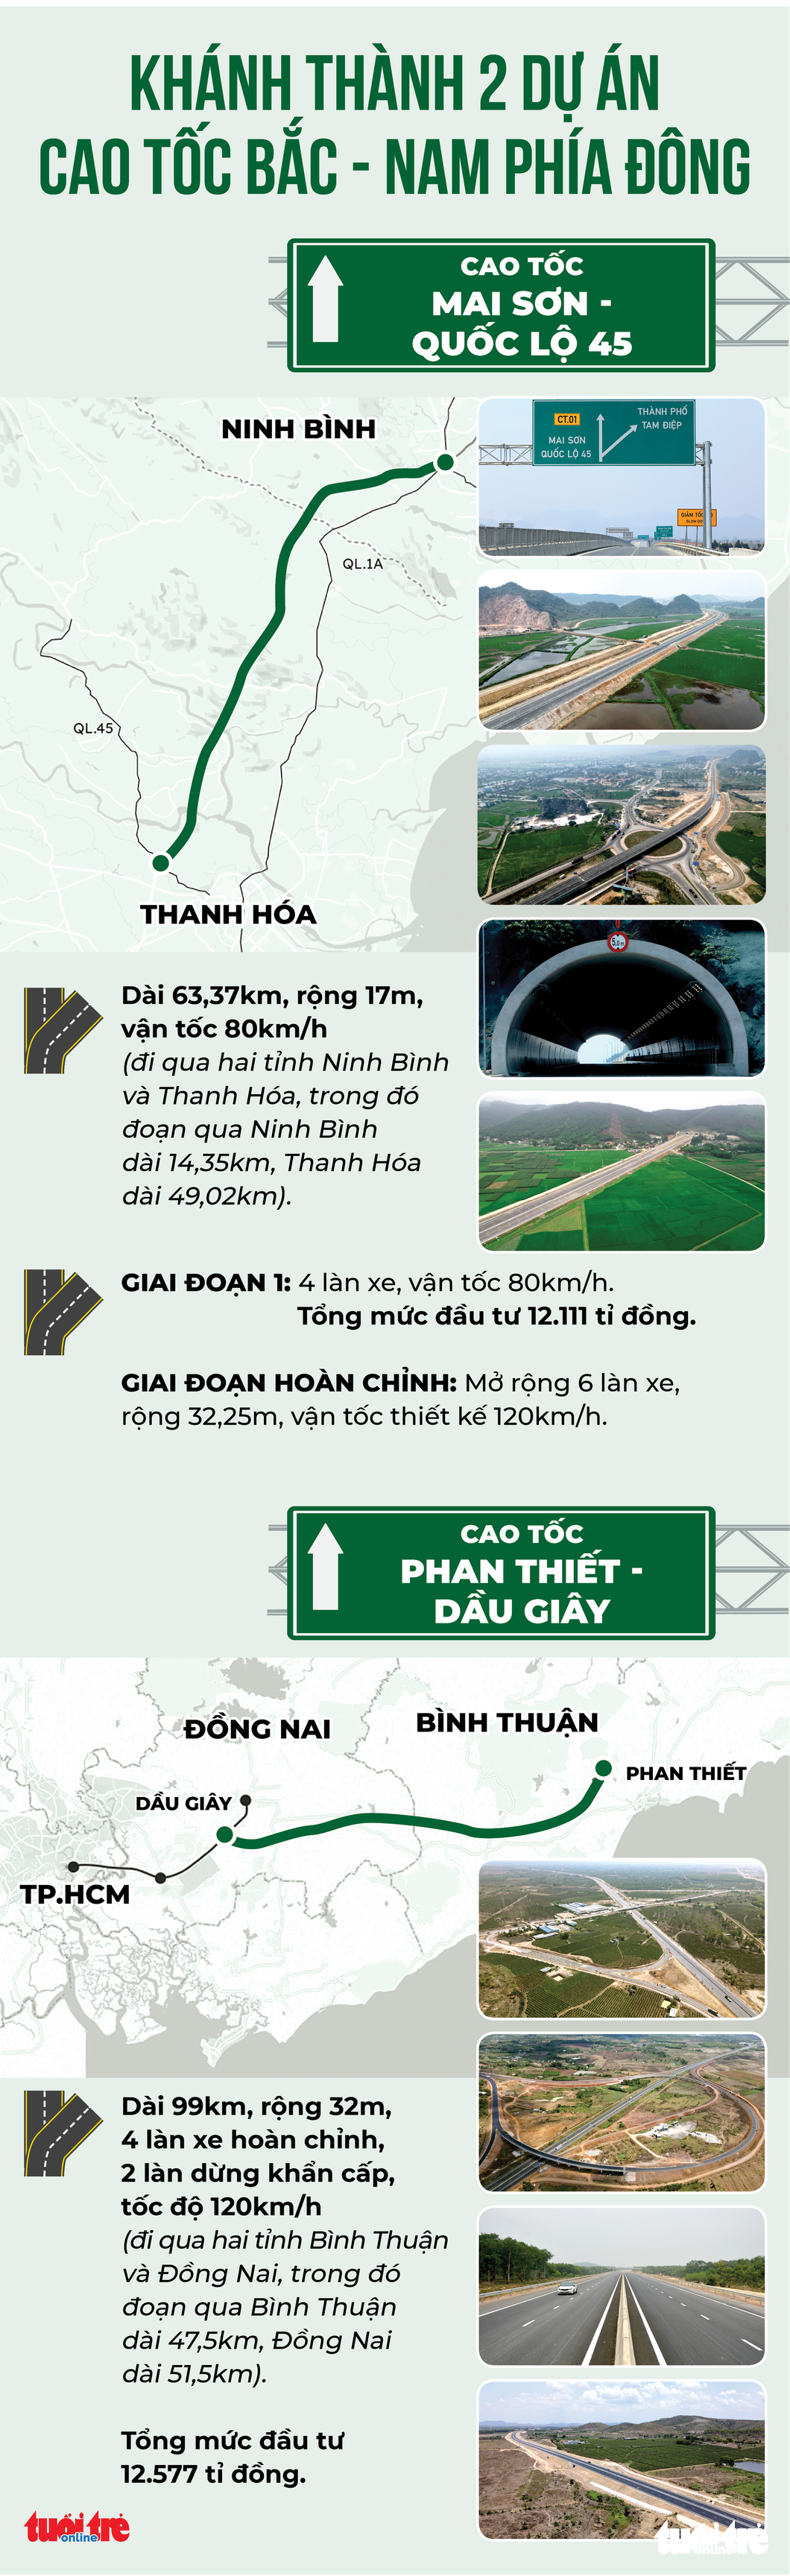 Sáng nay khánh thành cao tốc Dầu Giây - Phan Thiết và Mai Sơn - quốc lộ 45 - Ảnh 4.